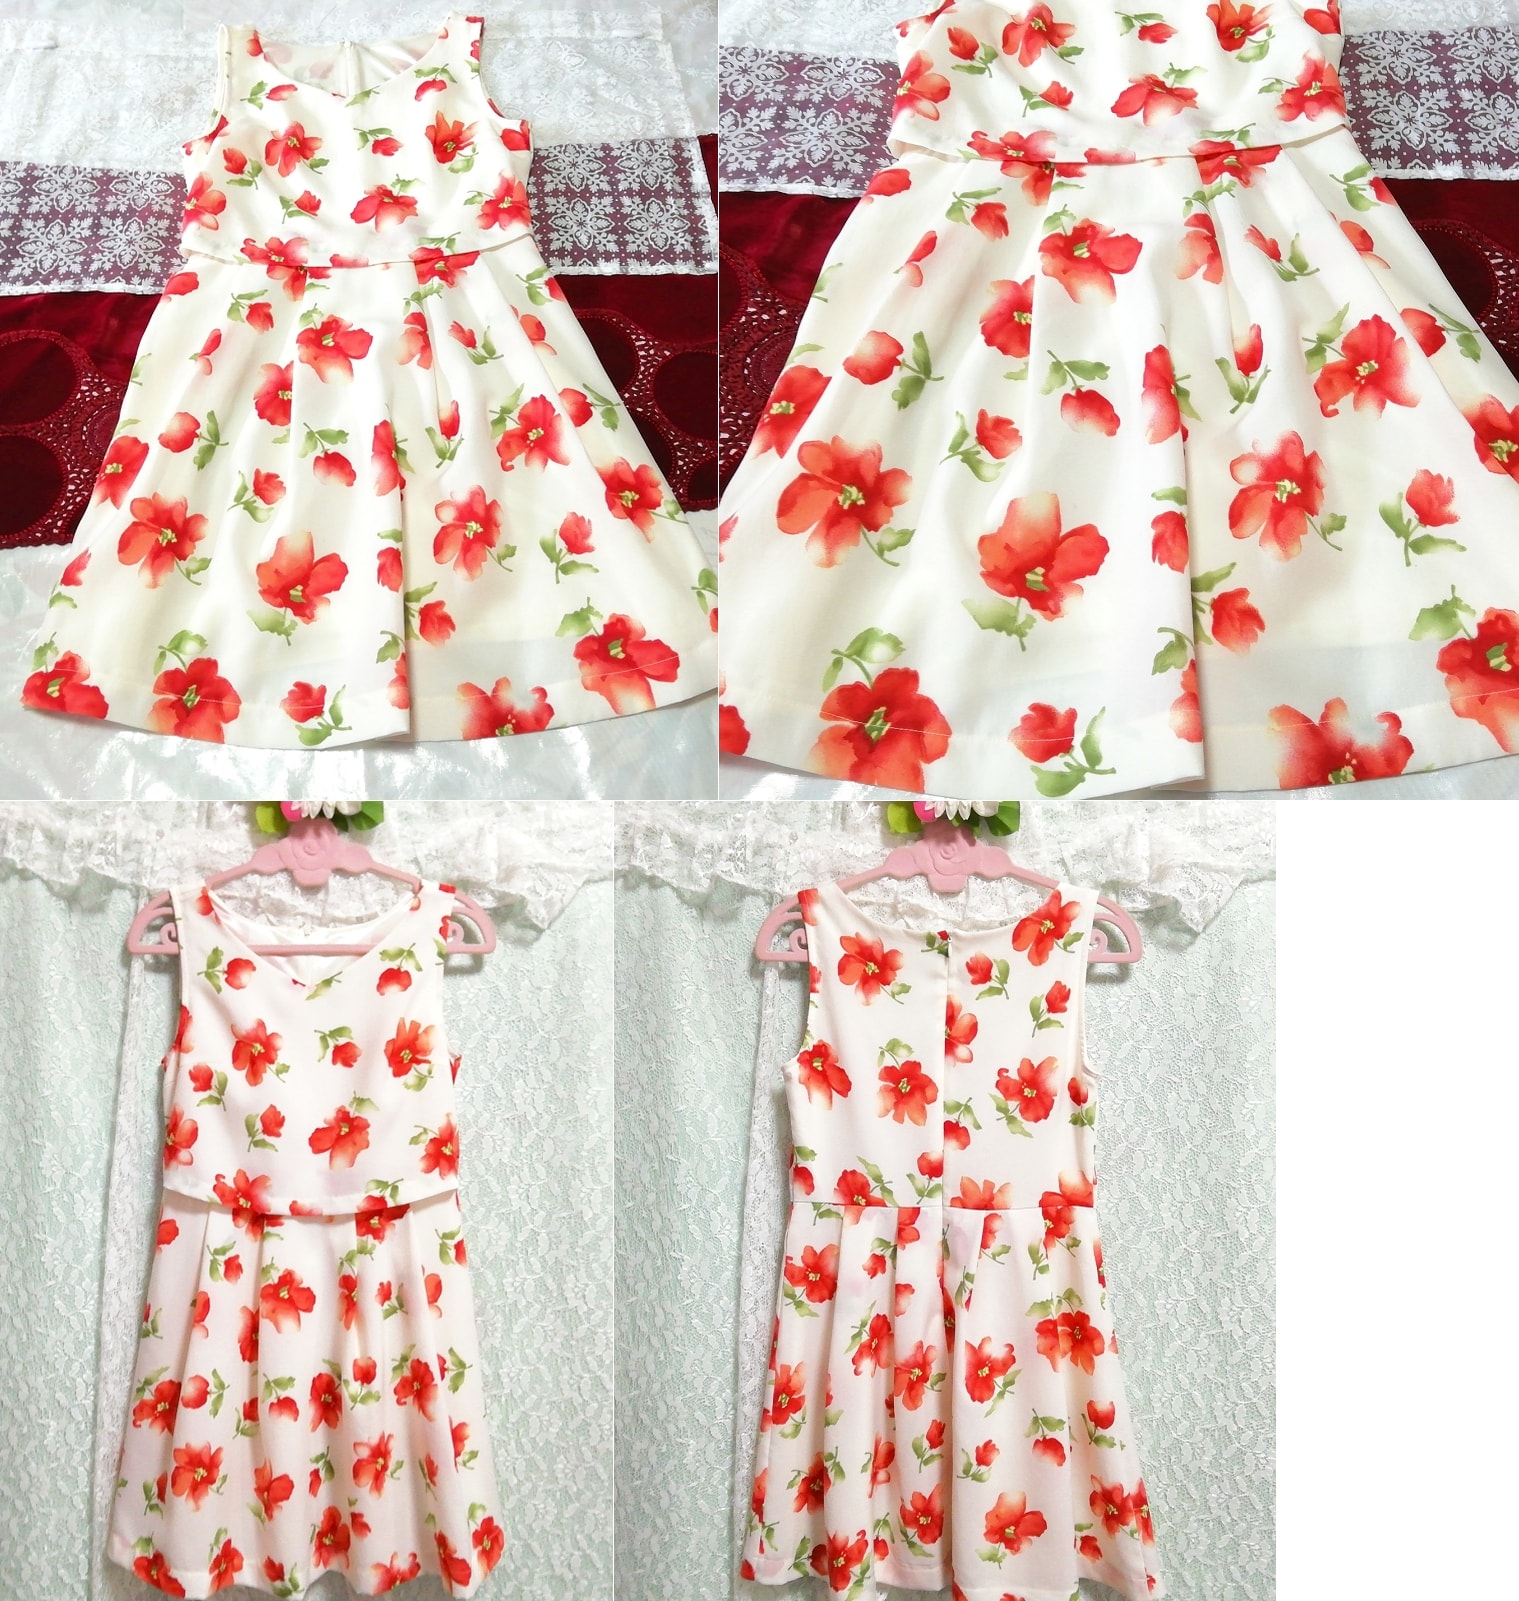 Minivestido camisón camisón bata sin mangas de gasa con estampado floral verde rojo blanco, mini falda, talla m